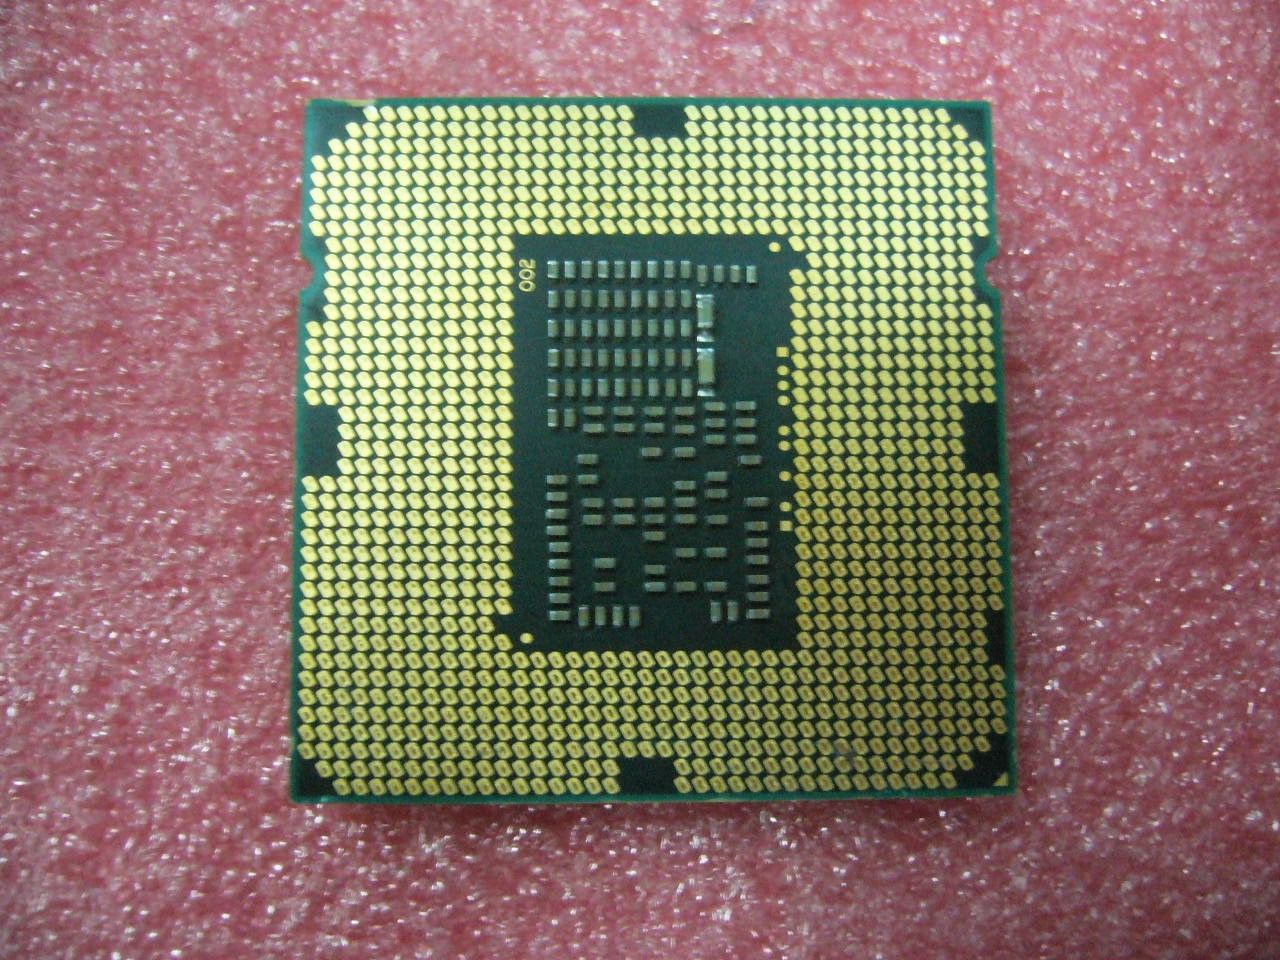 QTY 1x INTEL Core i5 Dual Core CPU i5-670 3.46GHZ/4MB LGA1156 ES Q3GM - Click Image to Close